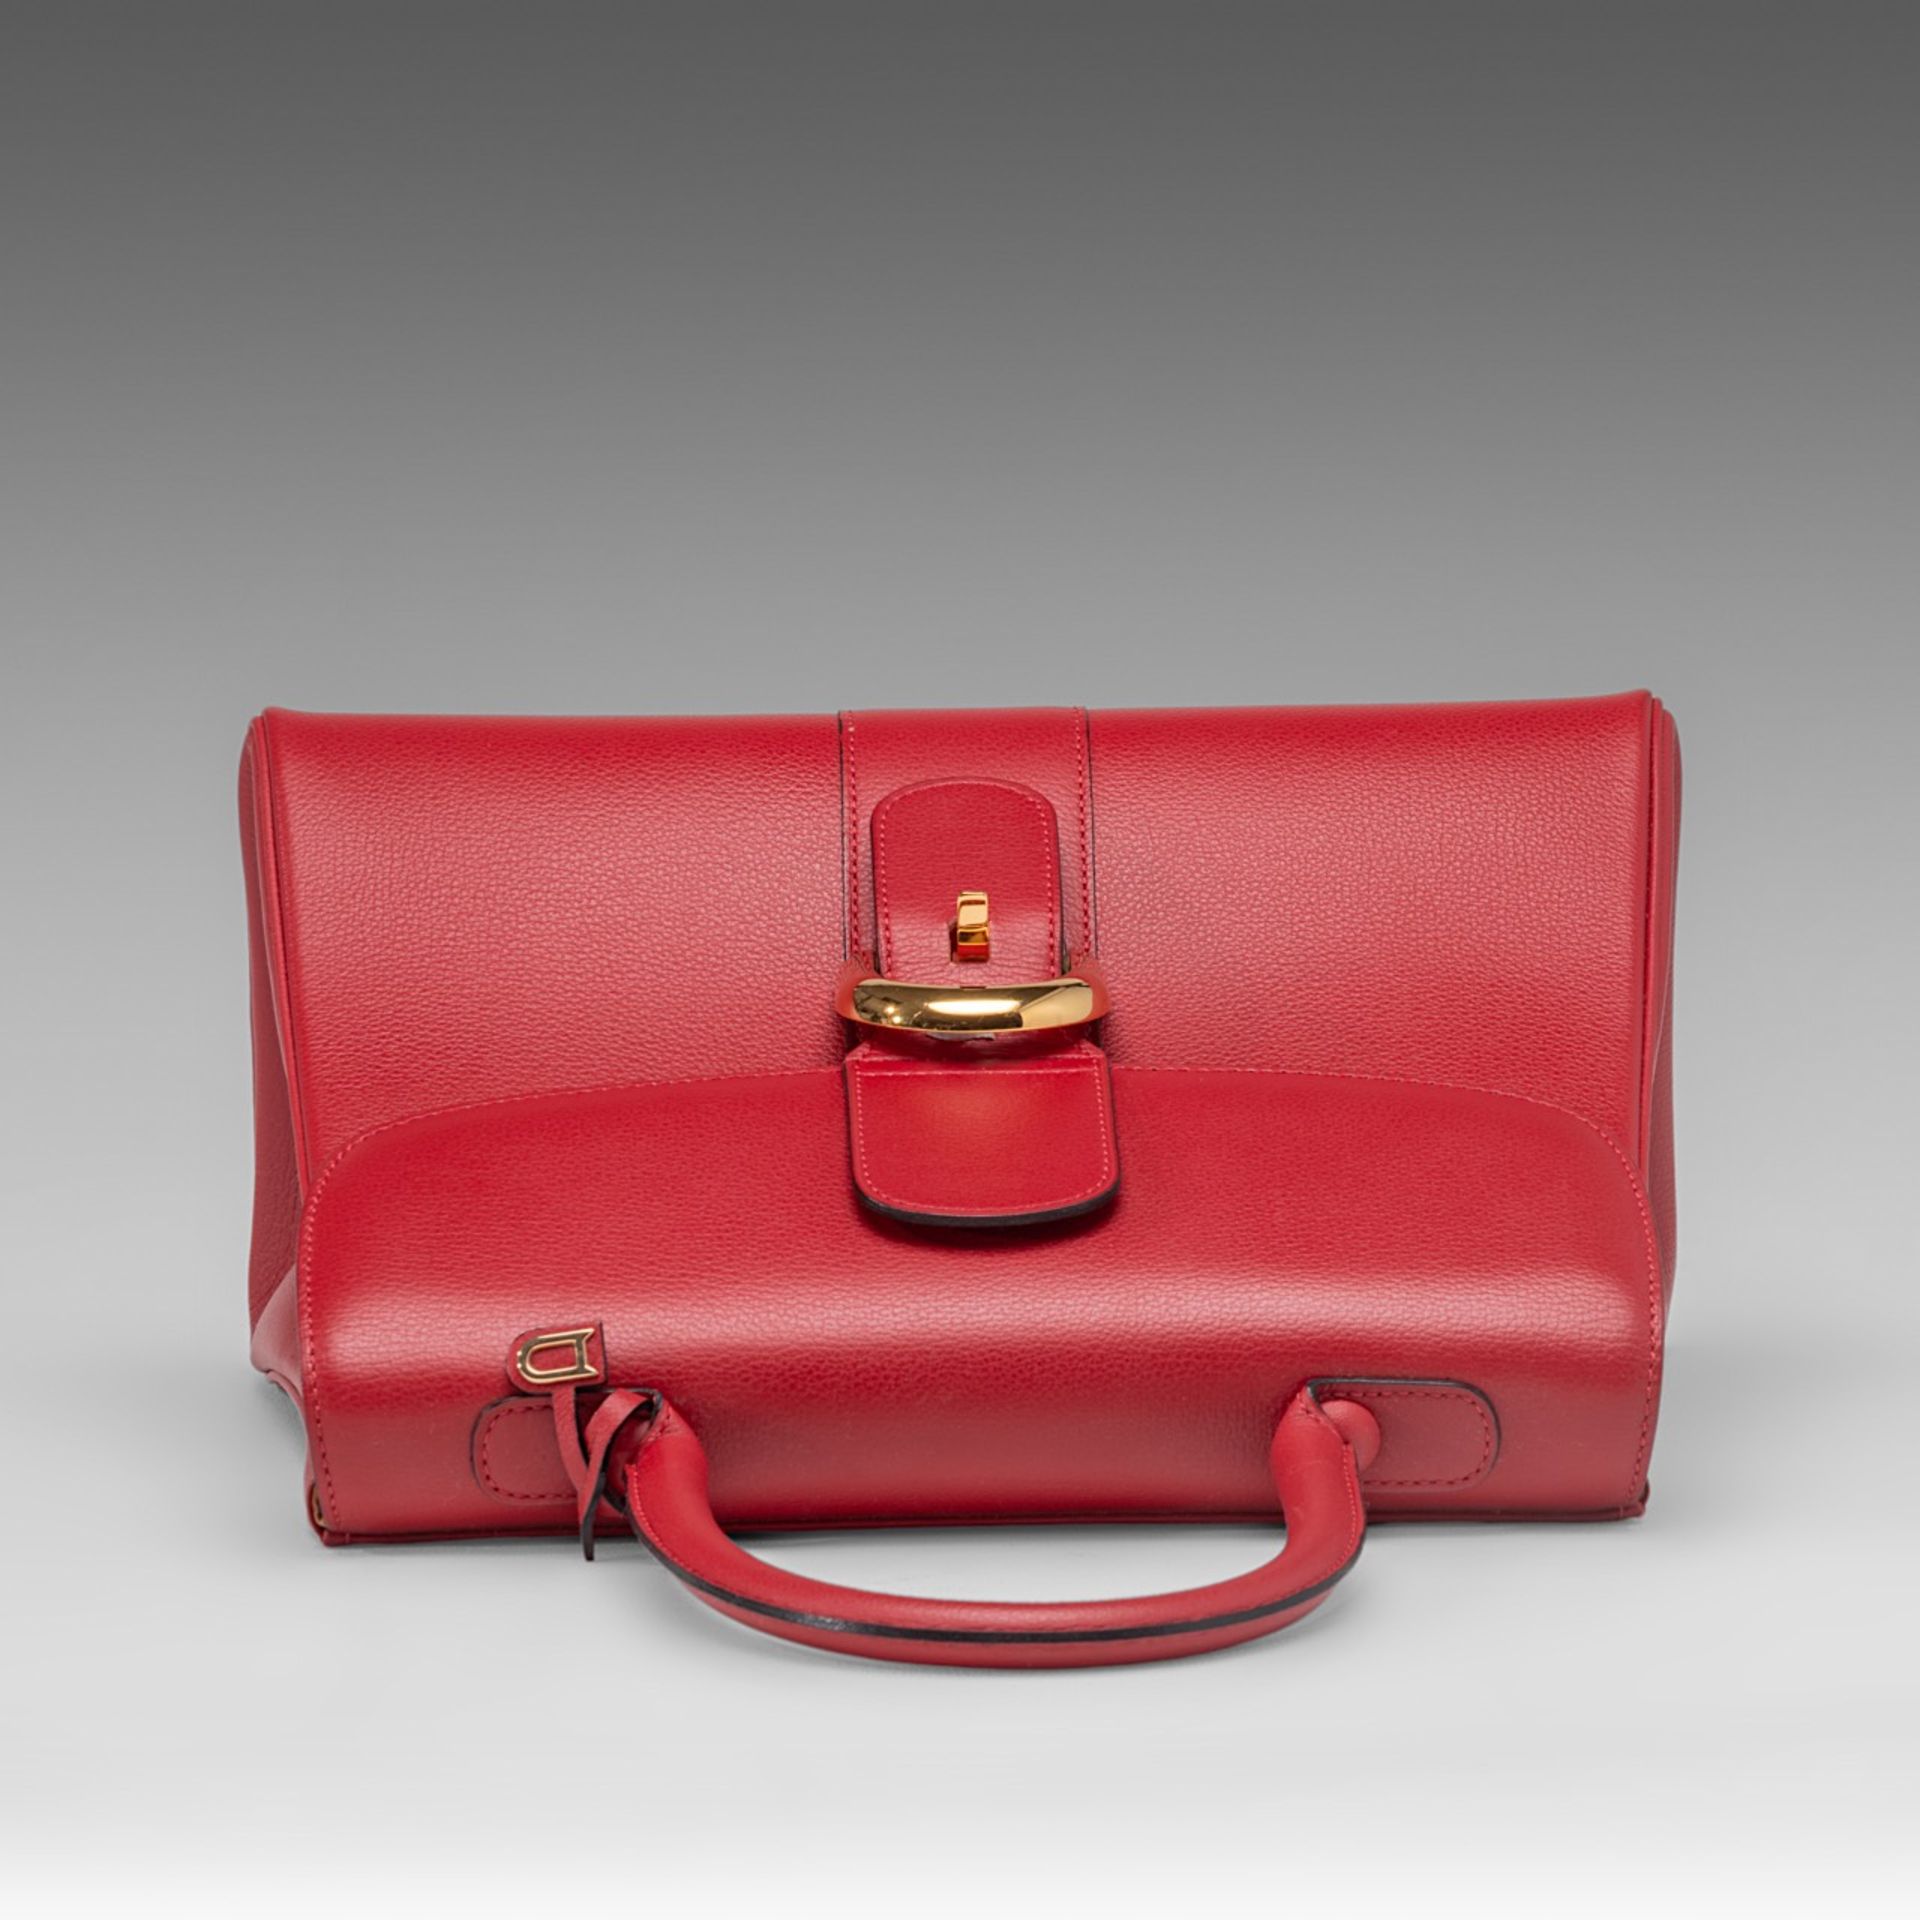 A Delvaux Brillant MM red leather handbag, H 21,5 - W 29 - D 13,5 cm - Bild 6 aus 14